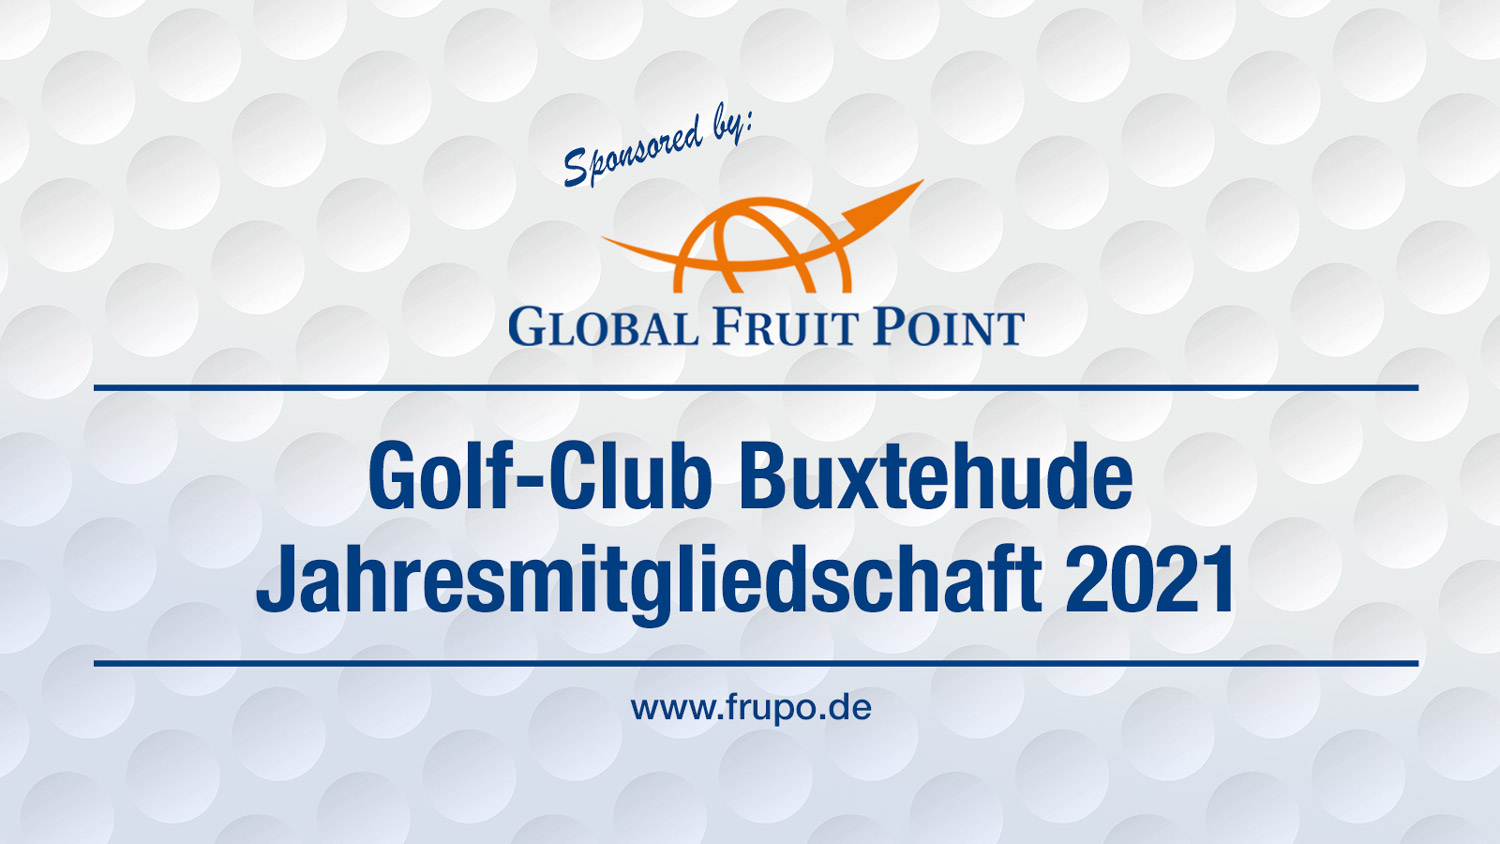 Global Fruit Point sponsert 5 kostenlose Jahresmitgliedschaften im Golf-Club Buxtehude.